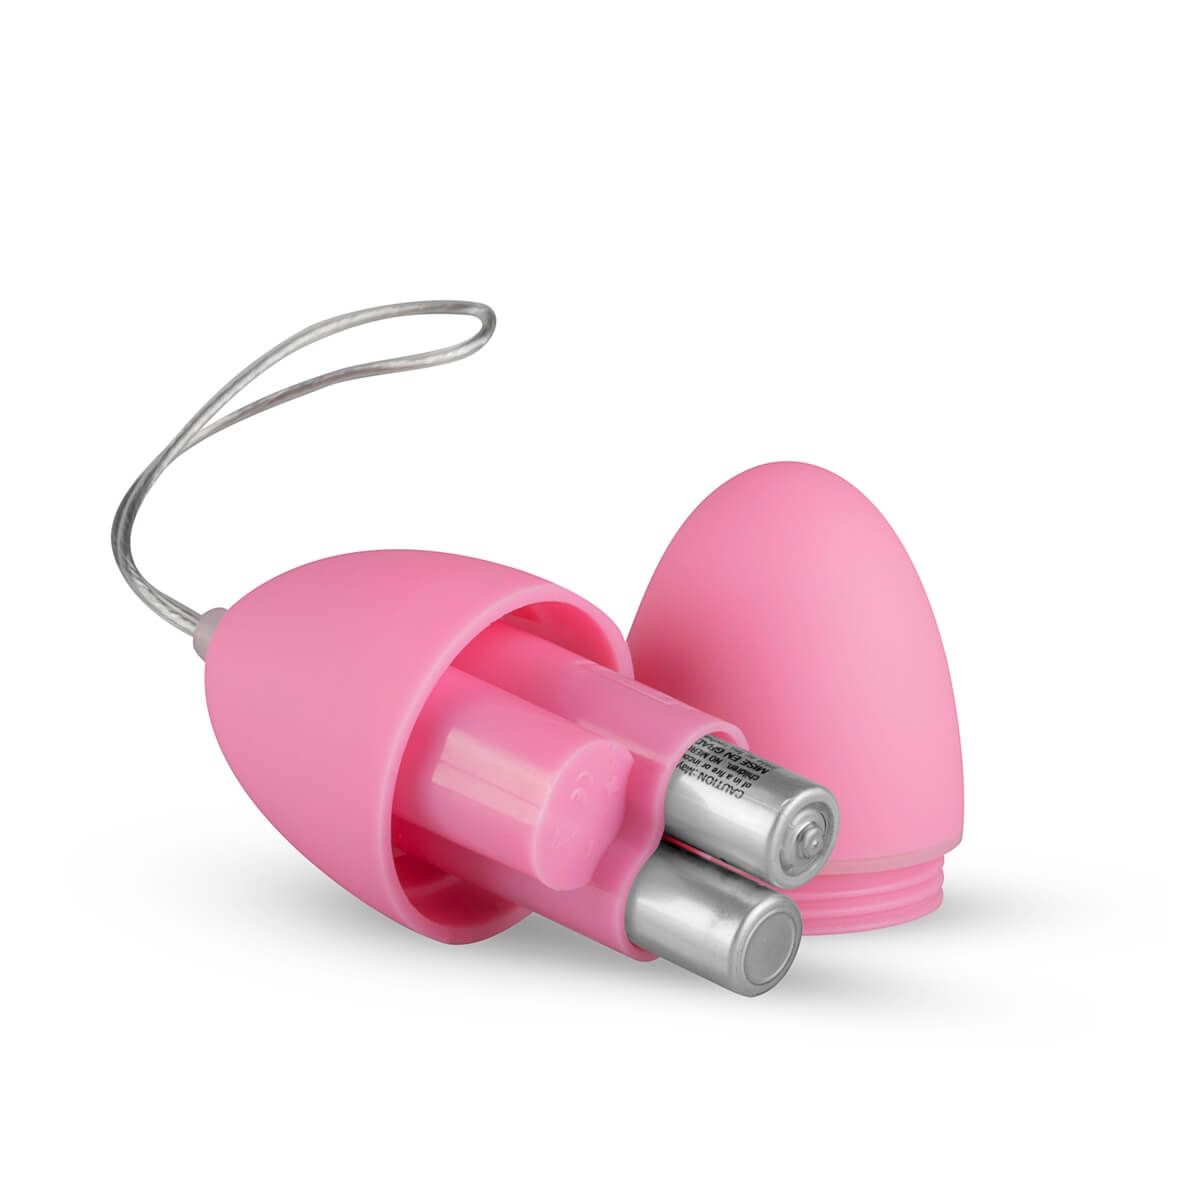 Easytoys - 7 ritmusú rádiós vibrációs tojás (pink)